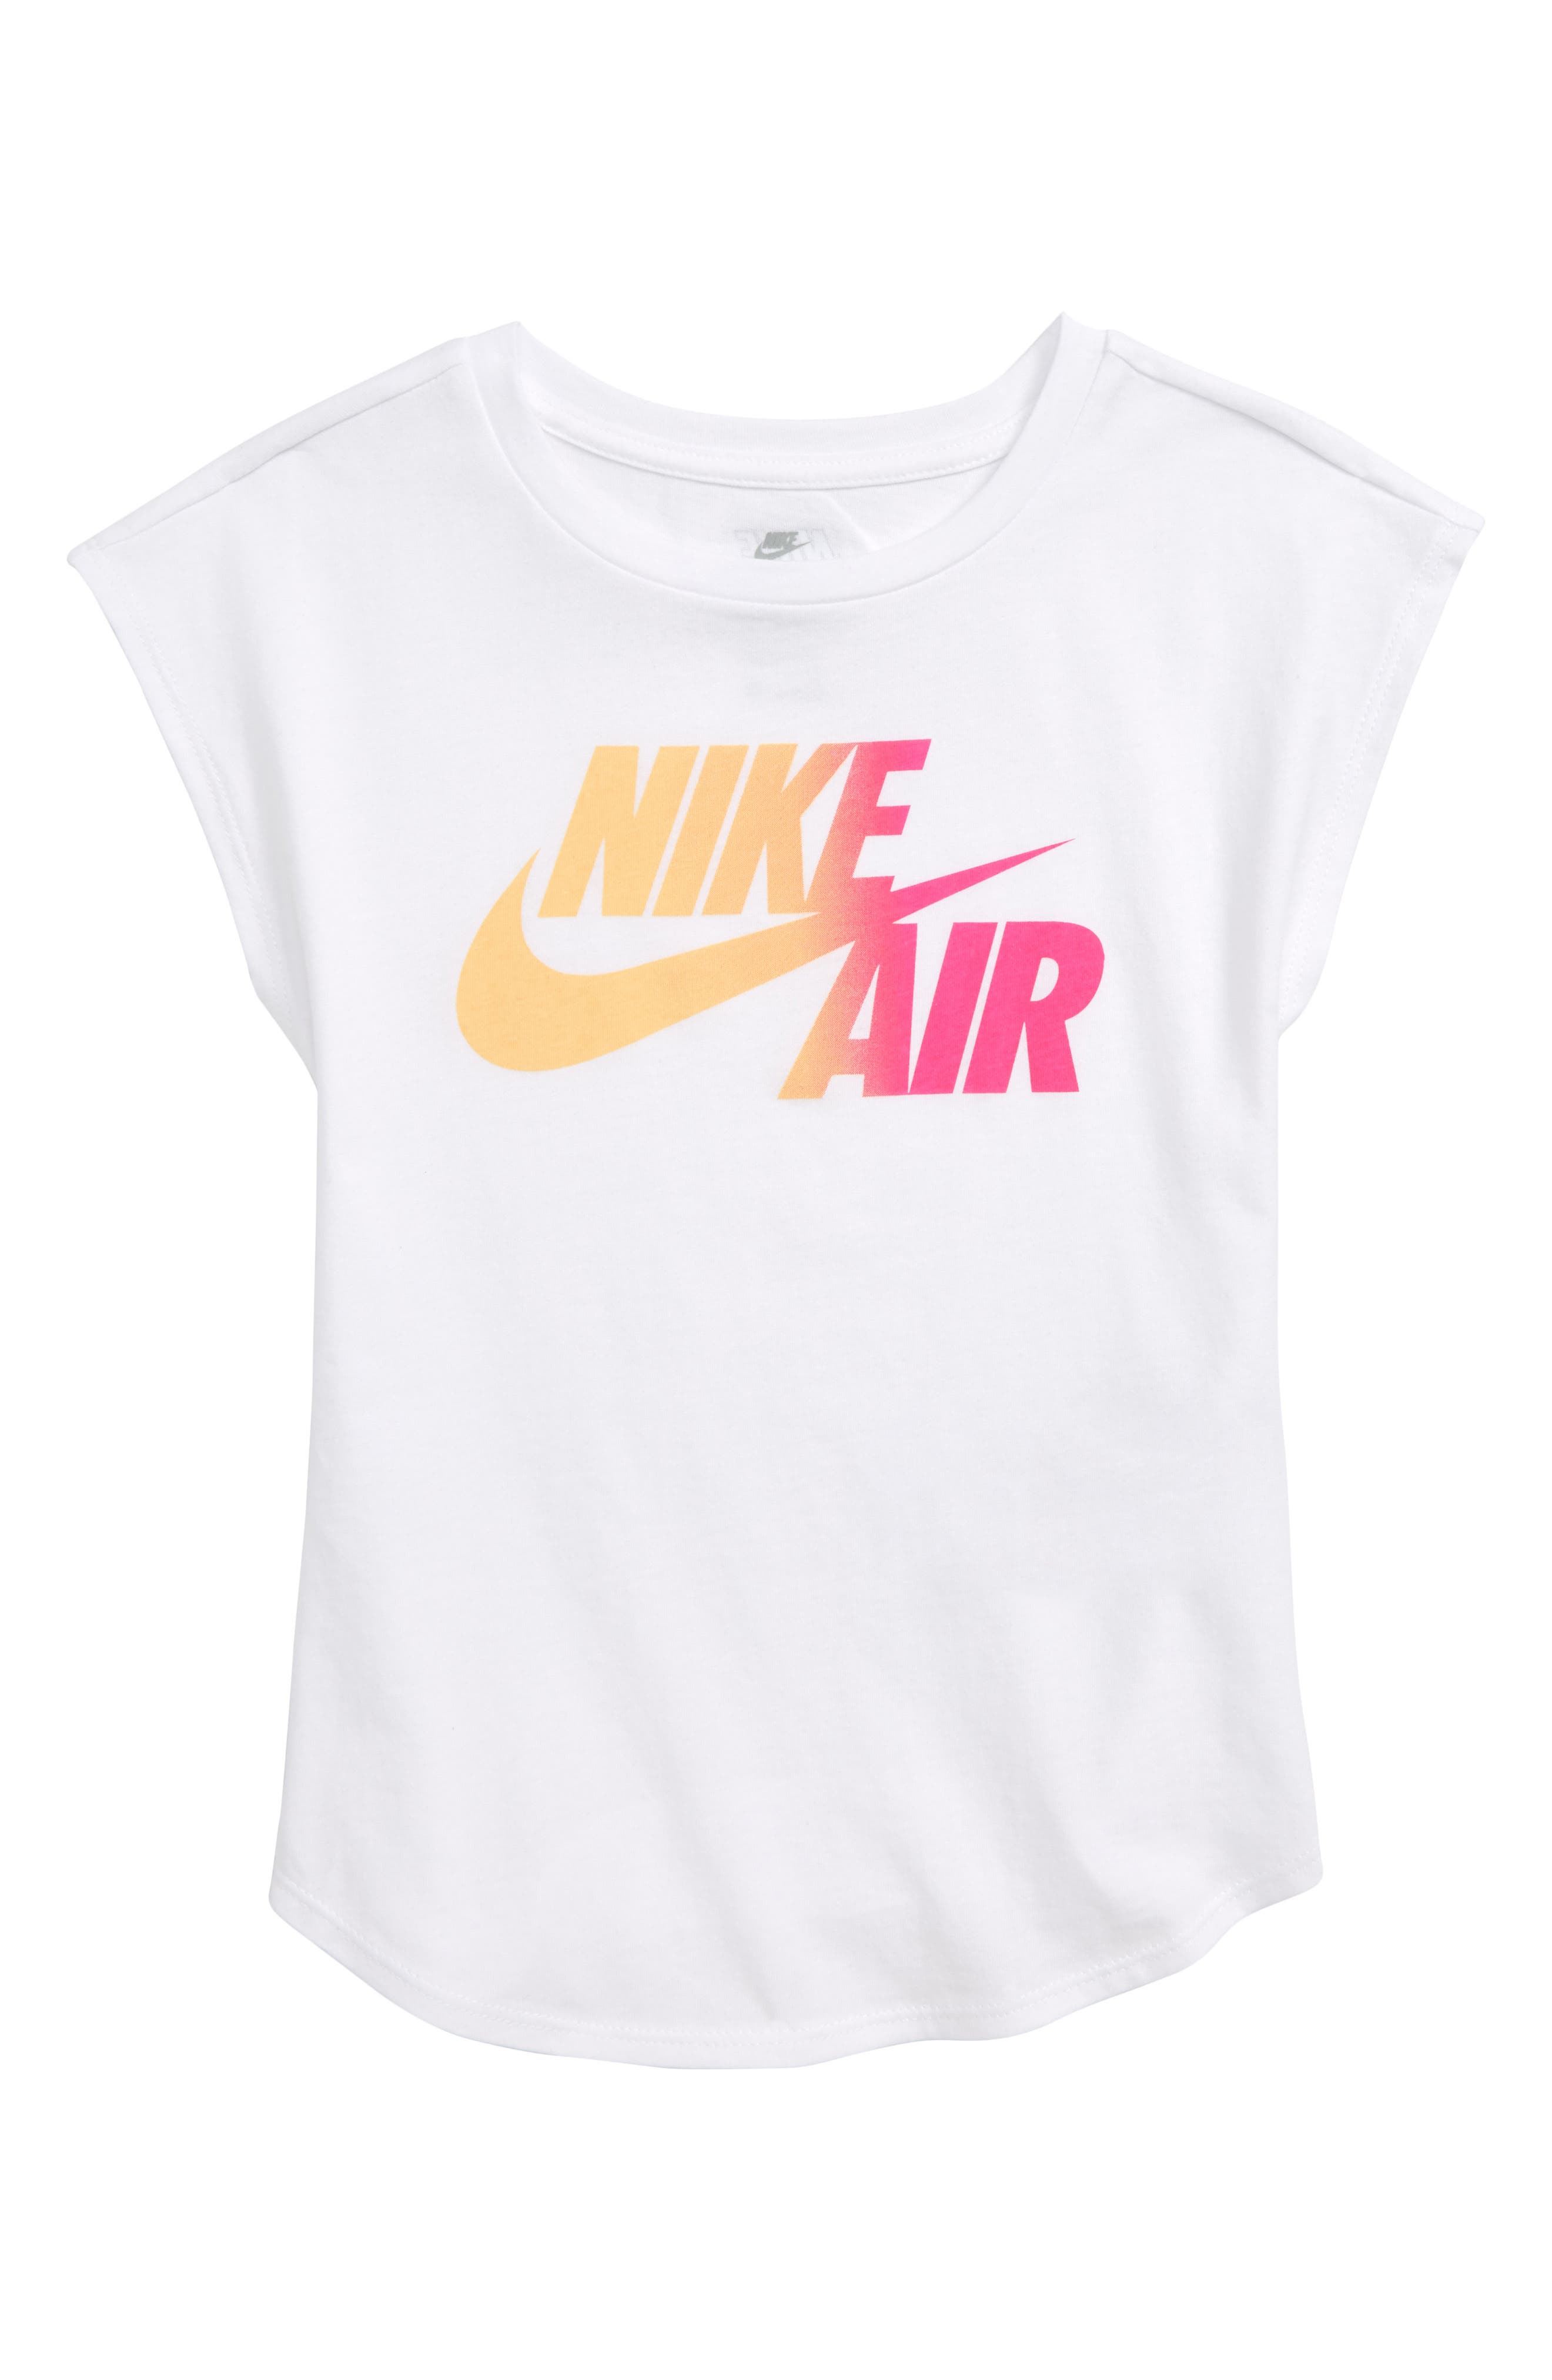 pink nike air shirt